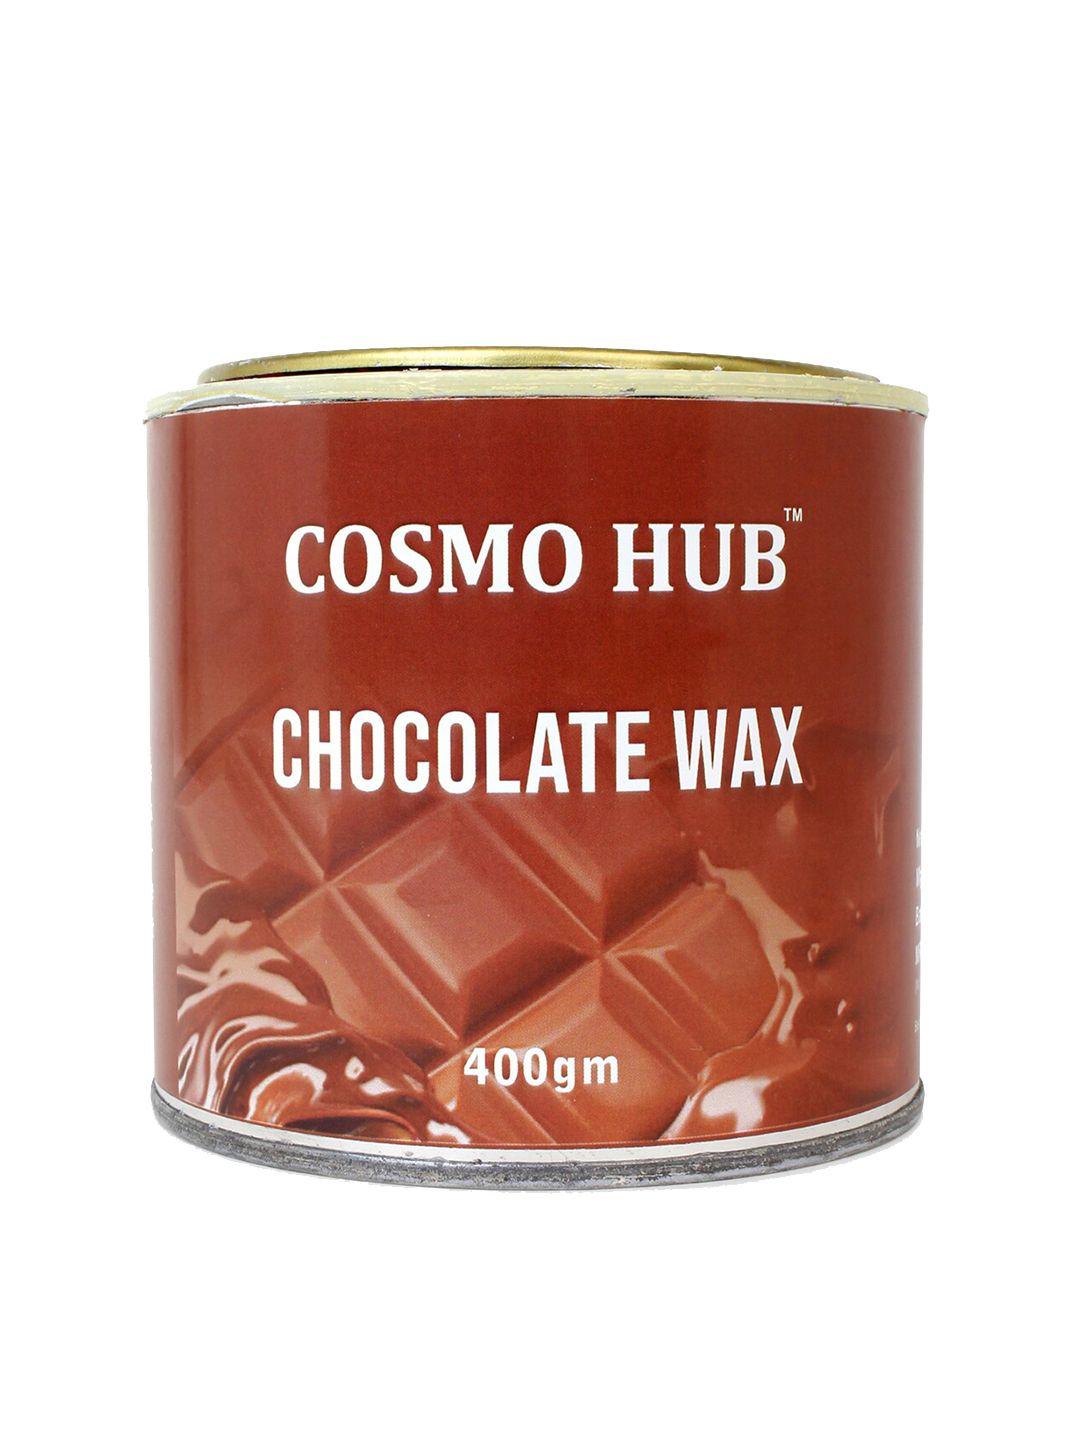 cosmo hub chocolate wax 400gm